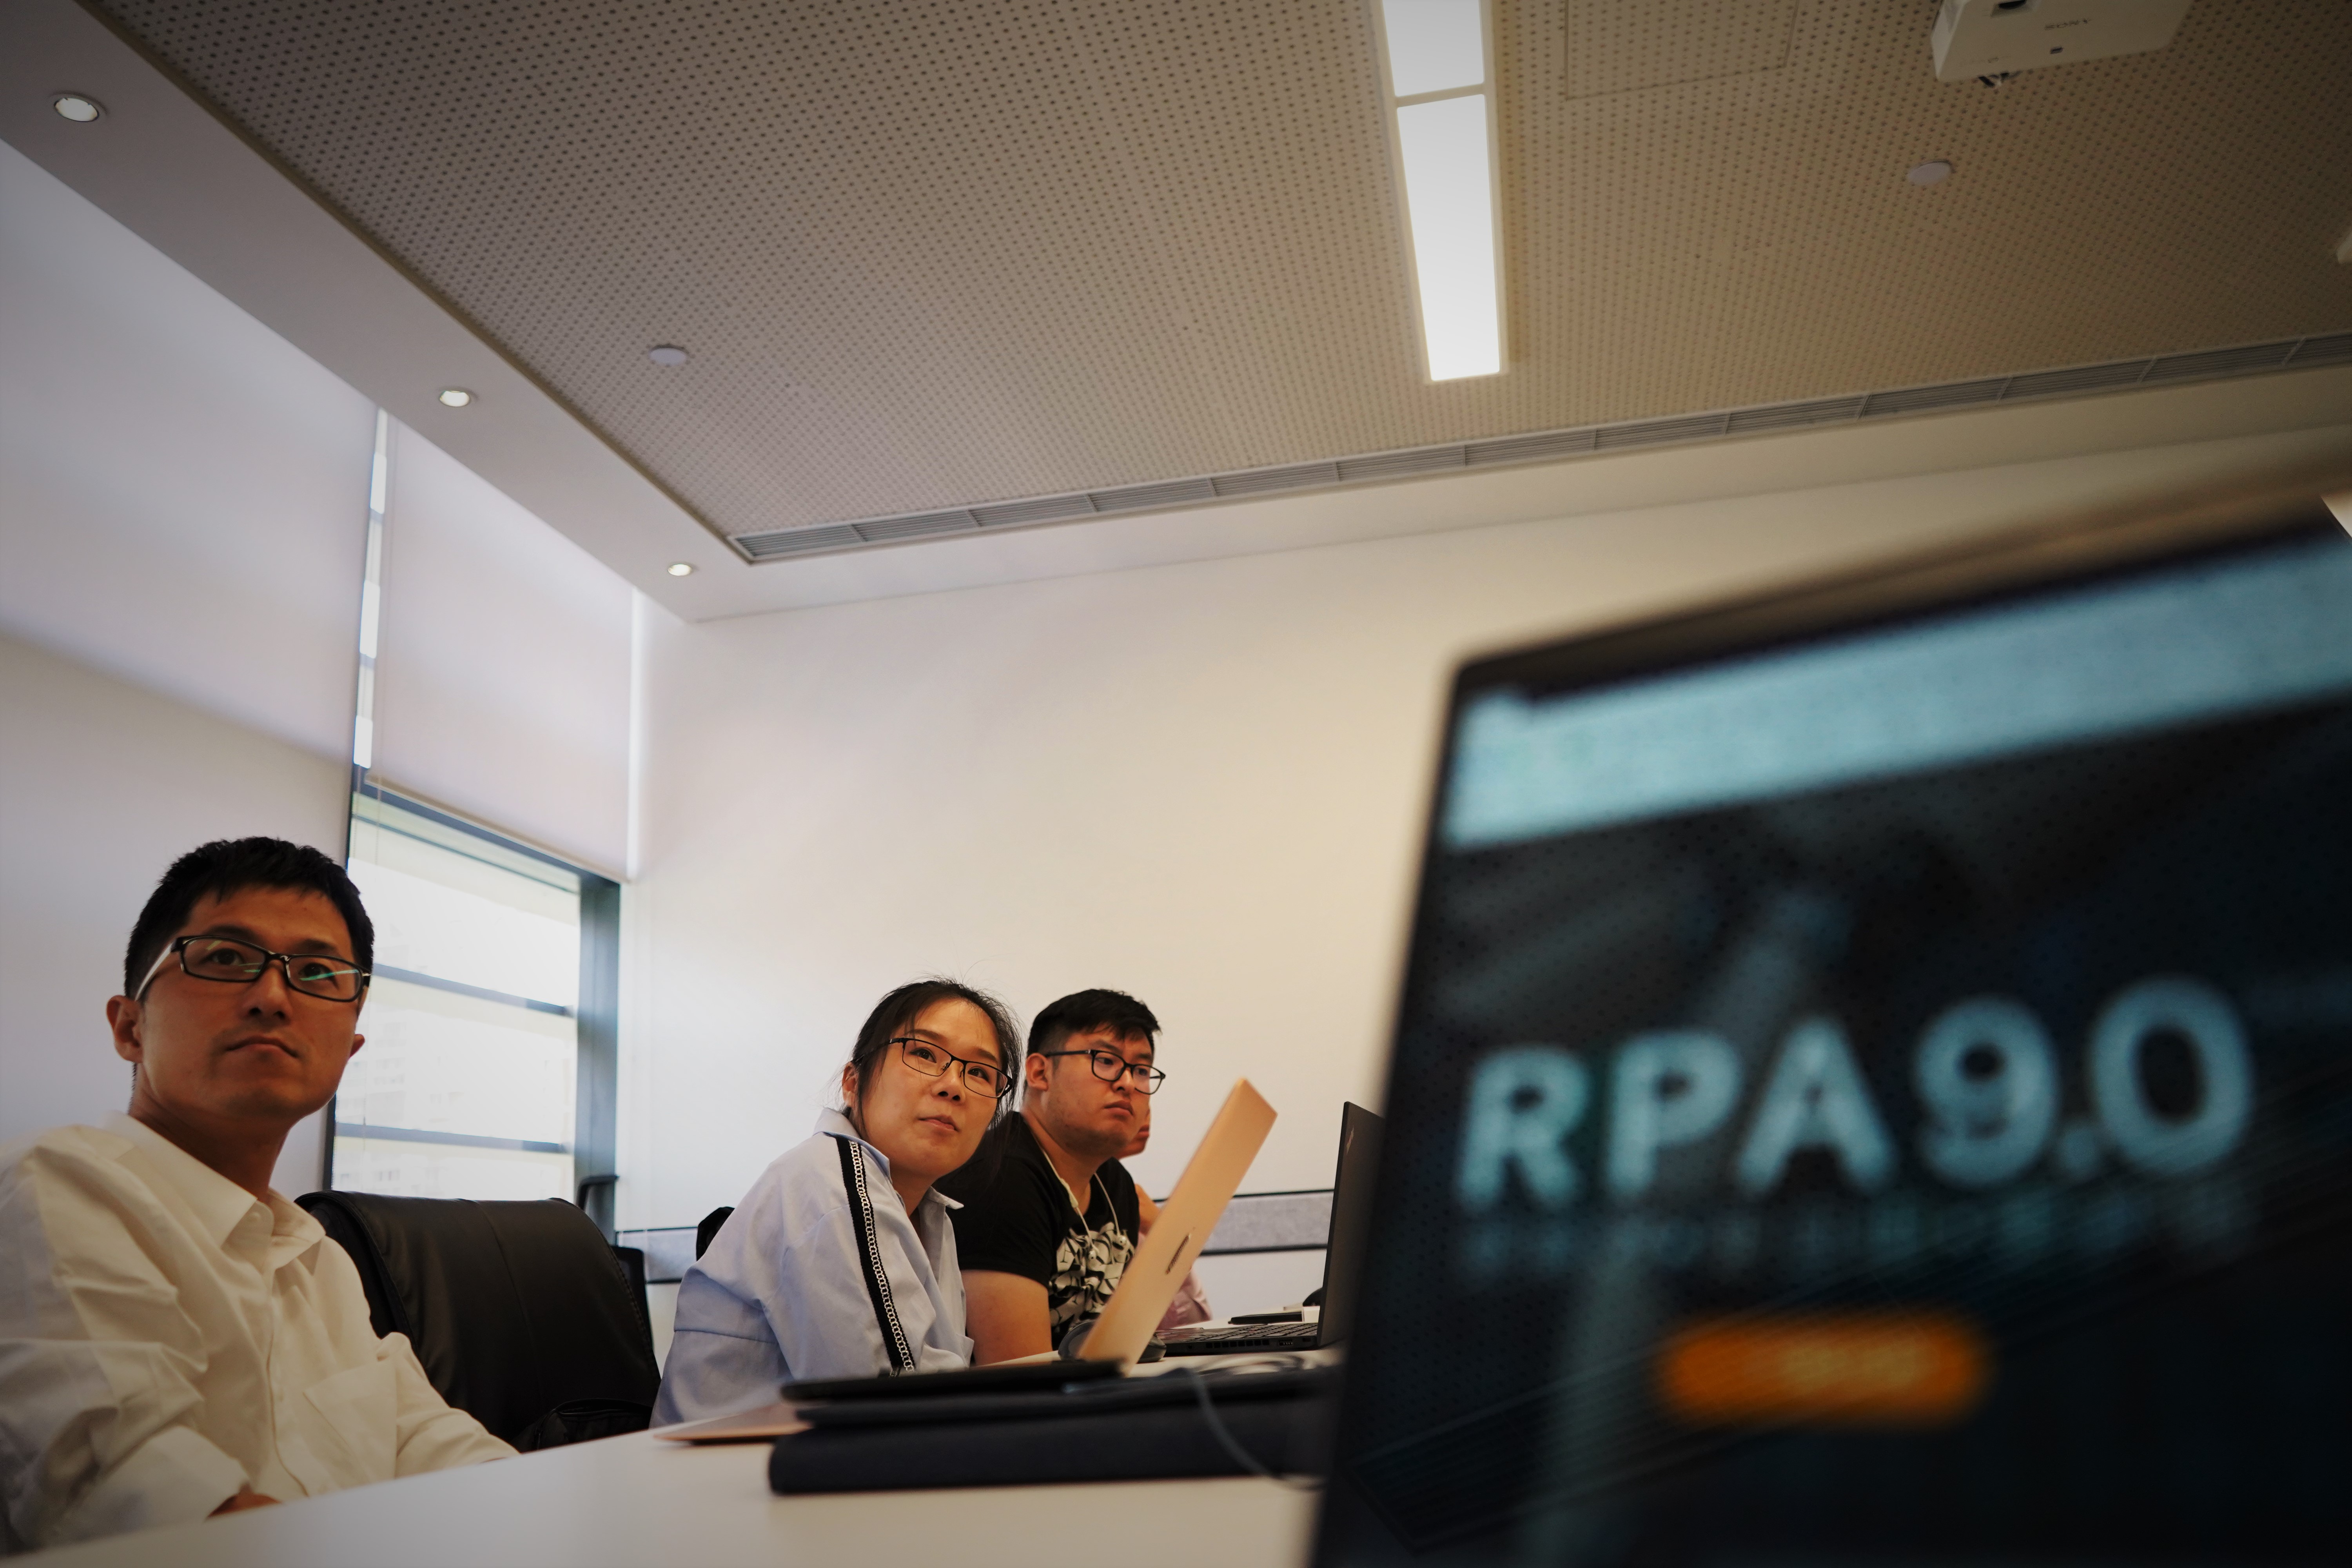 iS-RPA 技术认证培训 - 上海 20190524 班 - 培训完成